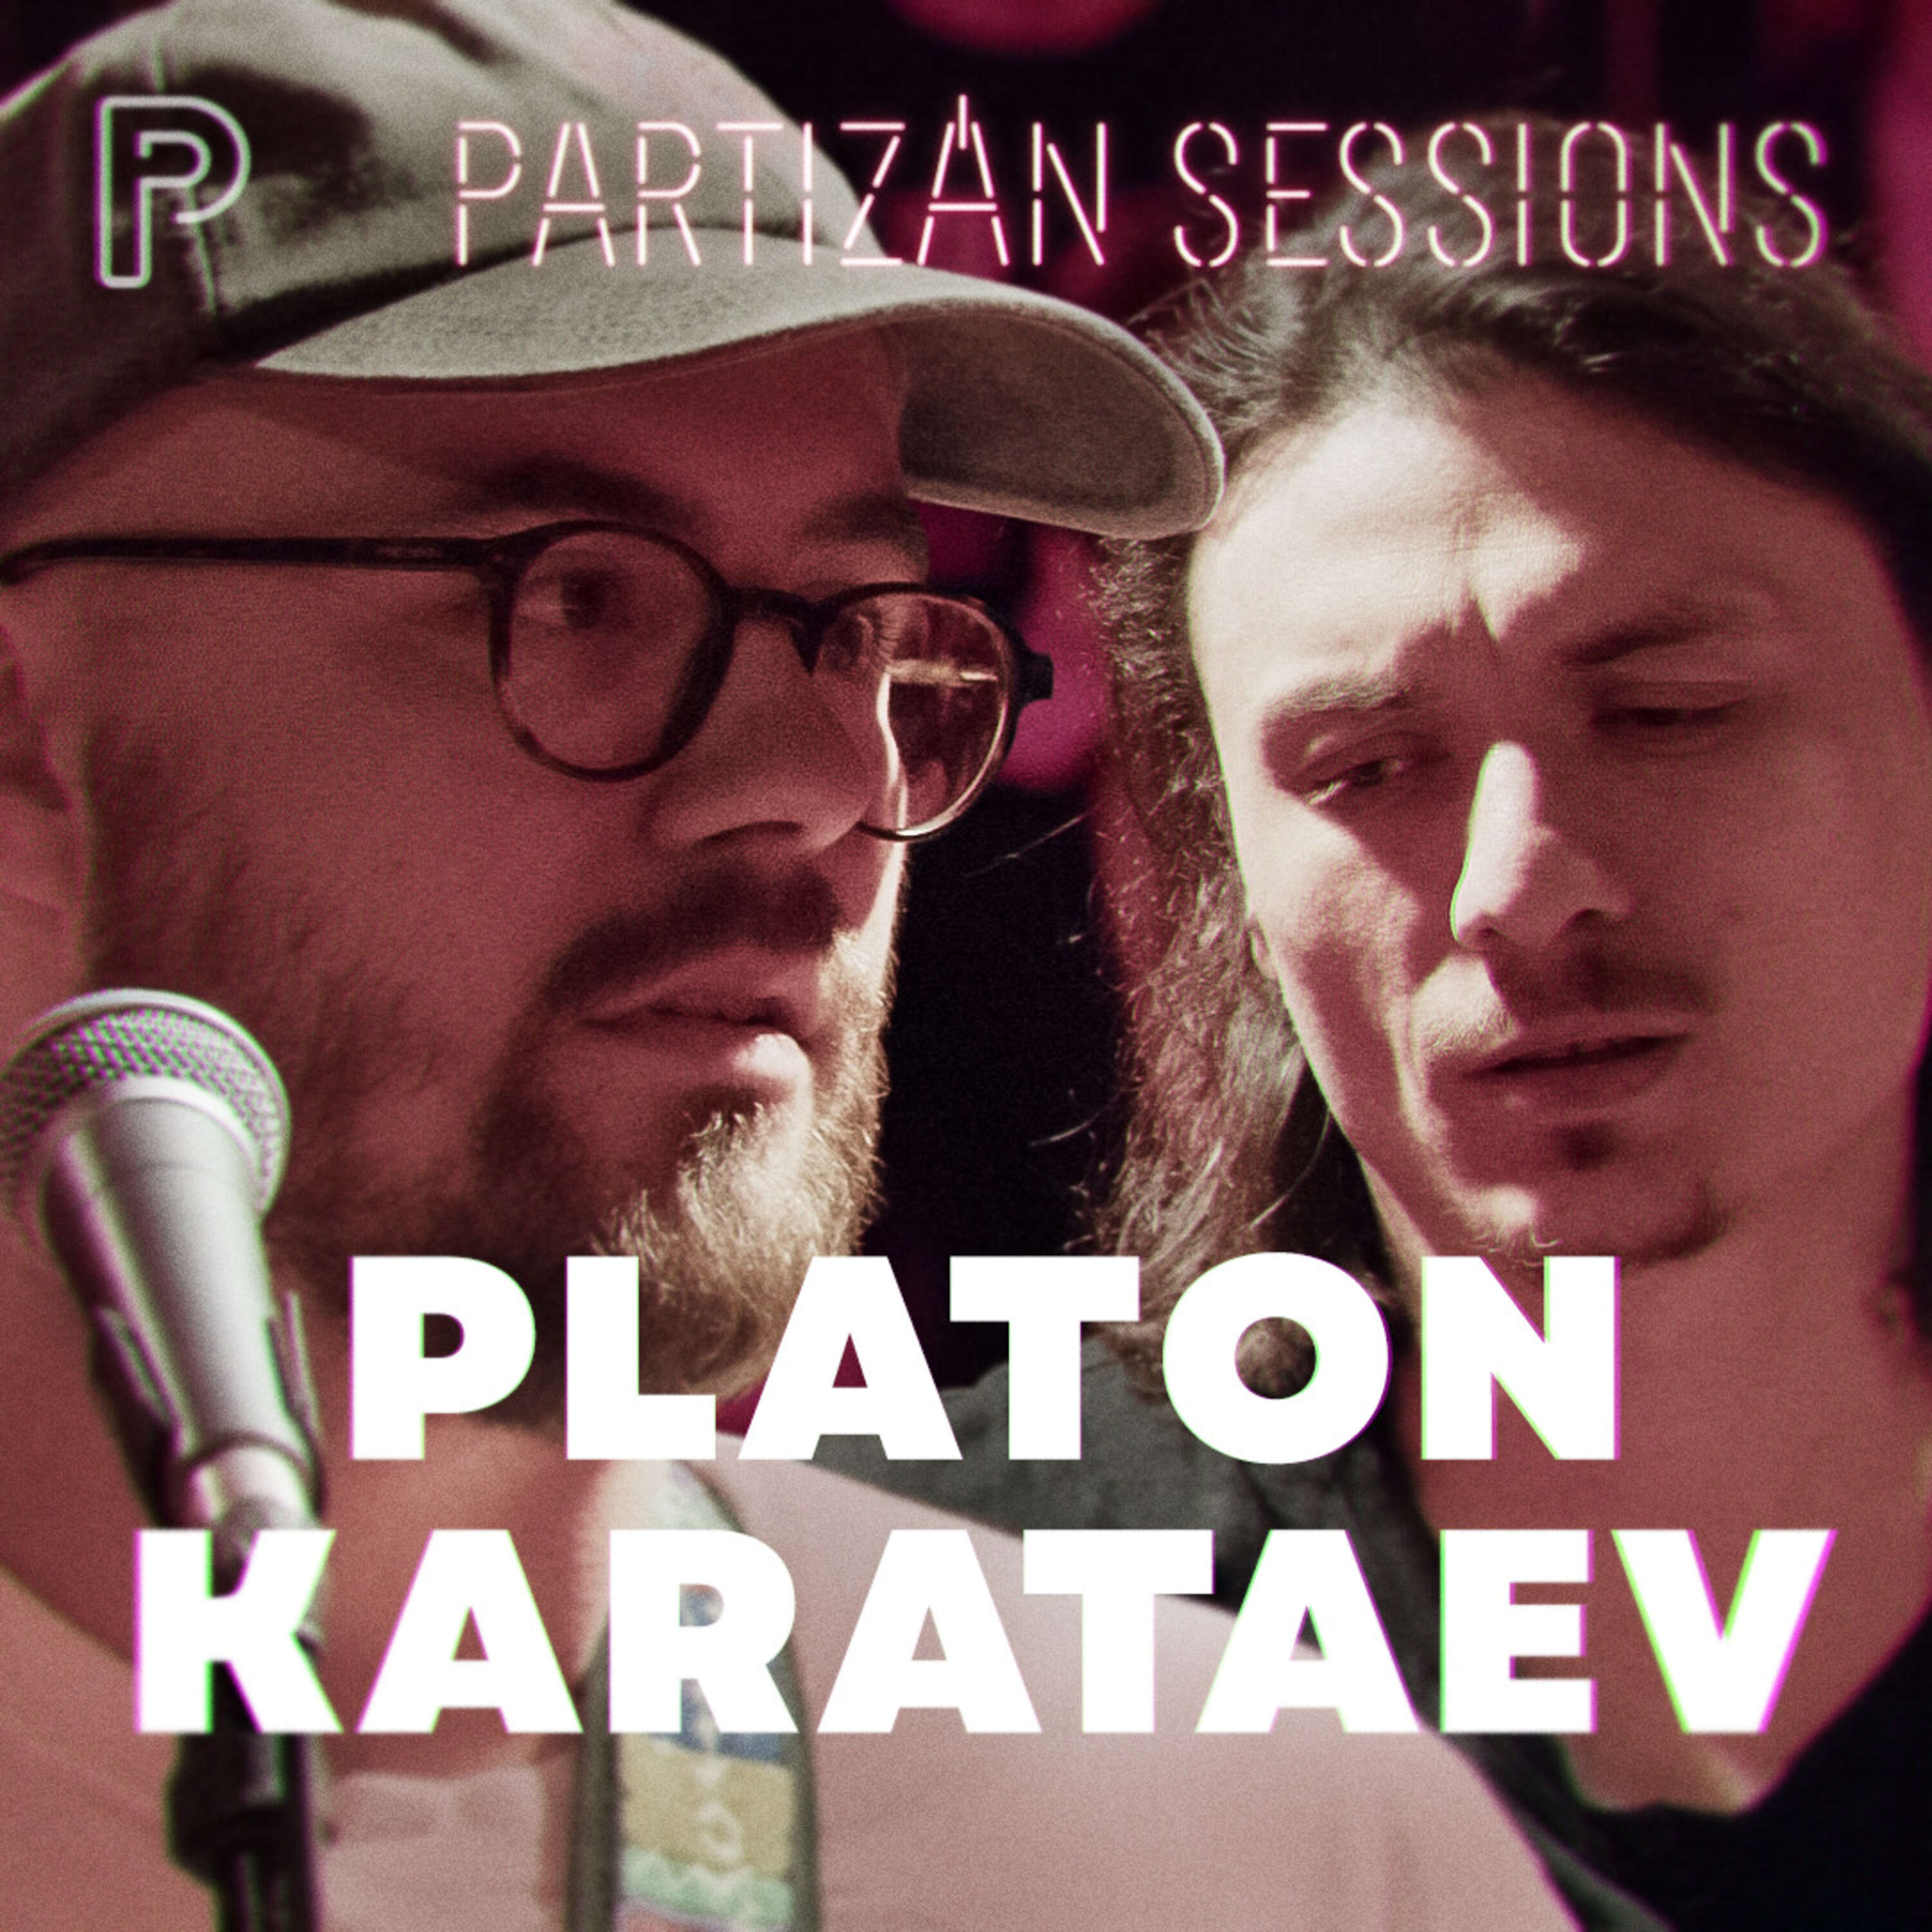 Platon Karatev - Partért kiáltó | Partizán Sessions